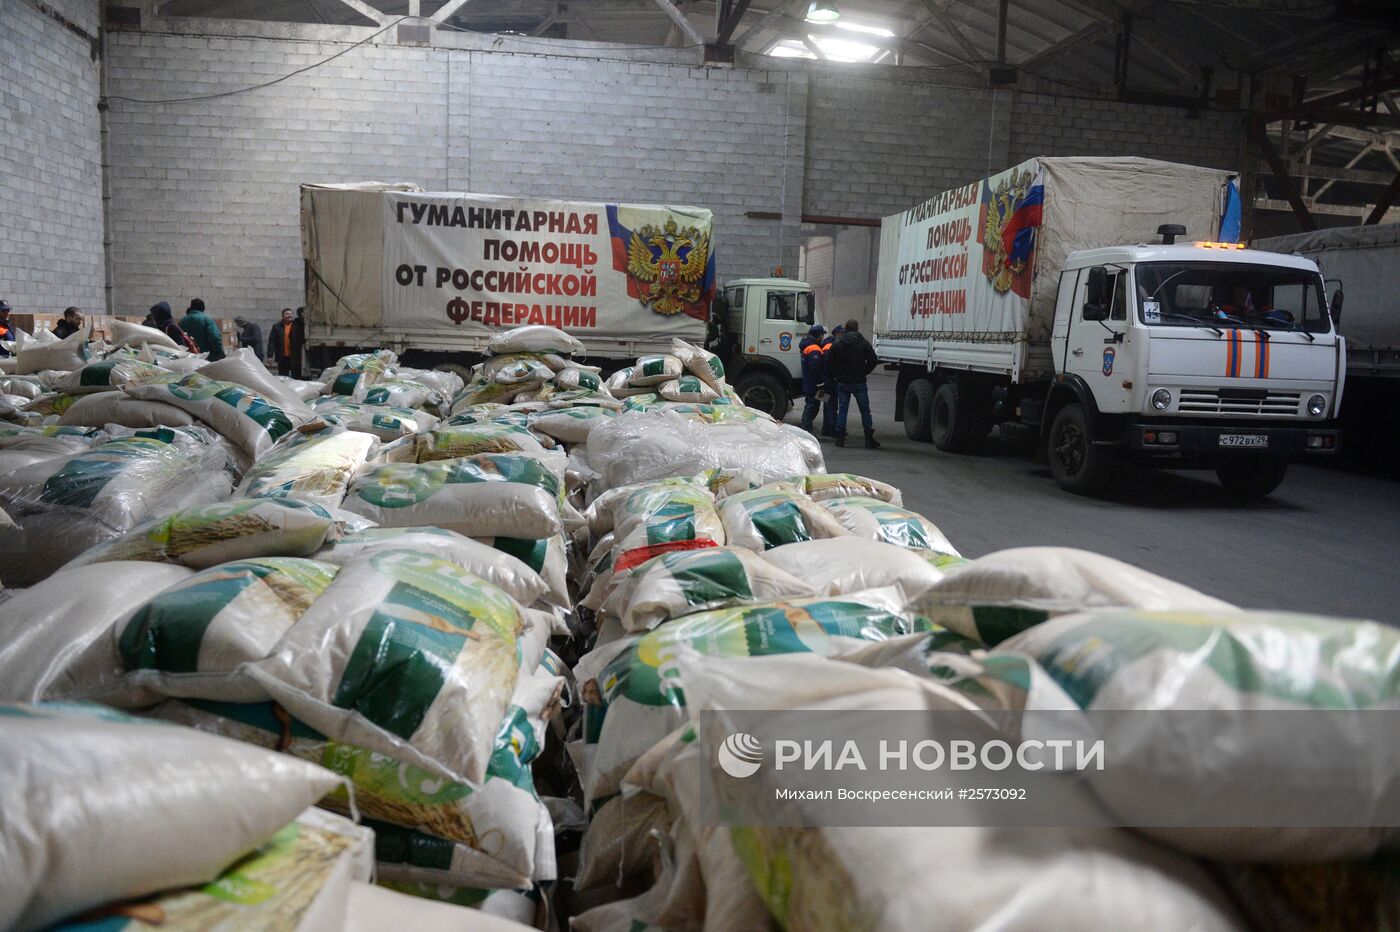 Прибытие 14-го российского гуманитарного конвоя на юго-восток Украины